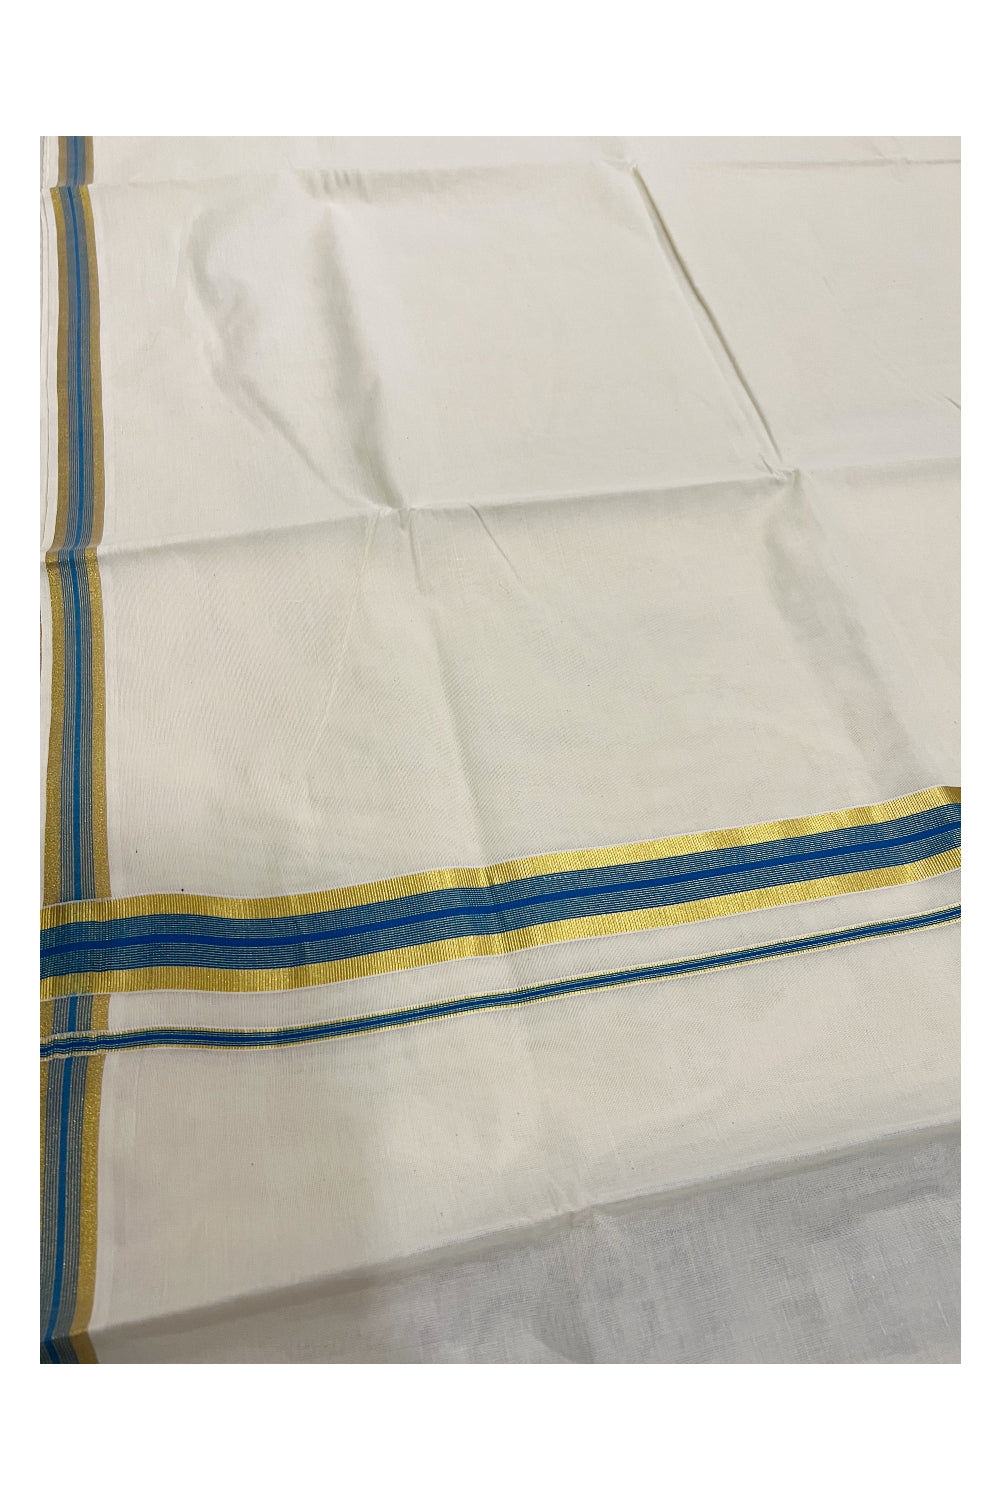 Kerala Pure Cotton Plain Saree with Kasavu and Light Blue Border